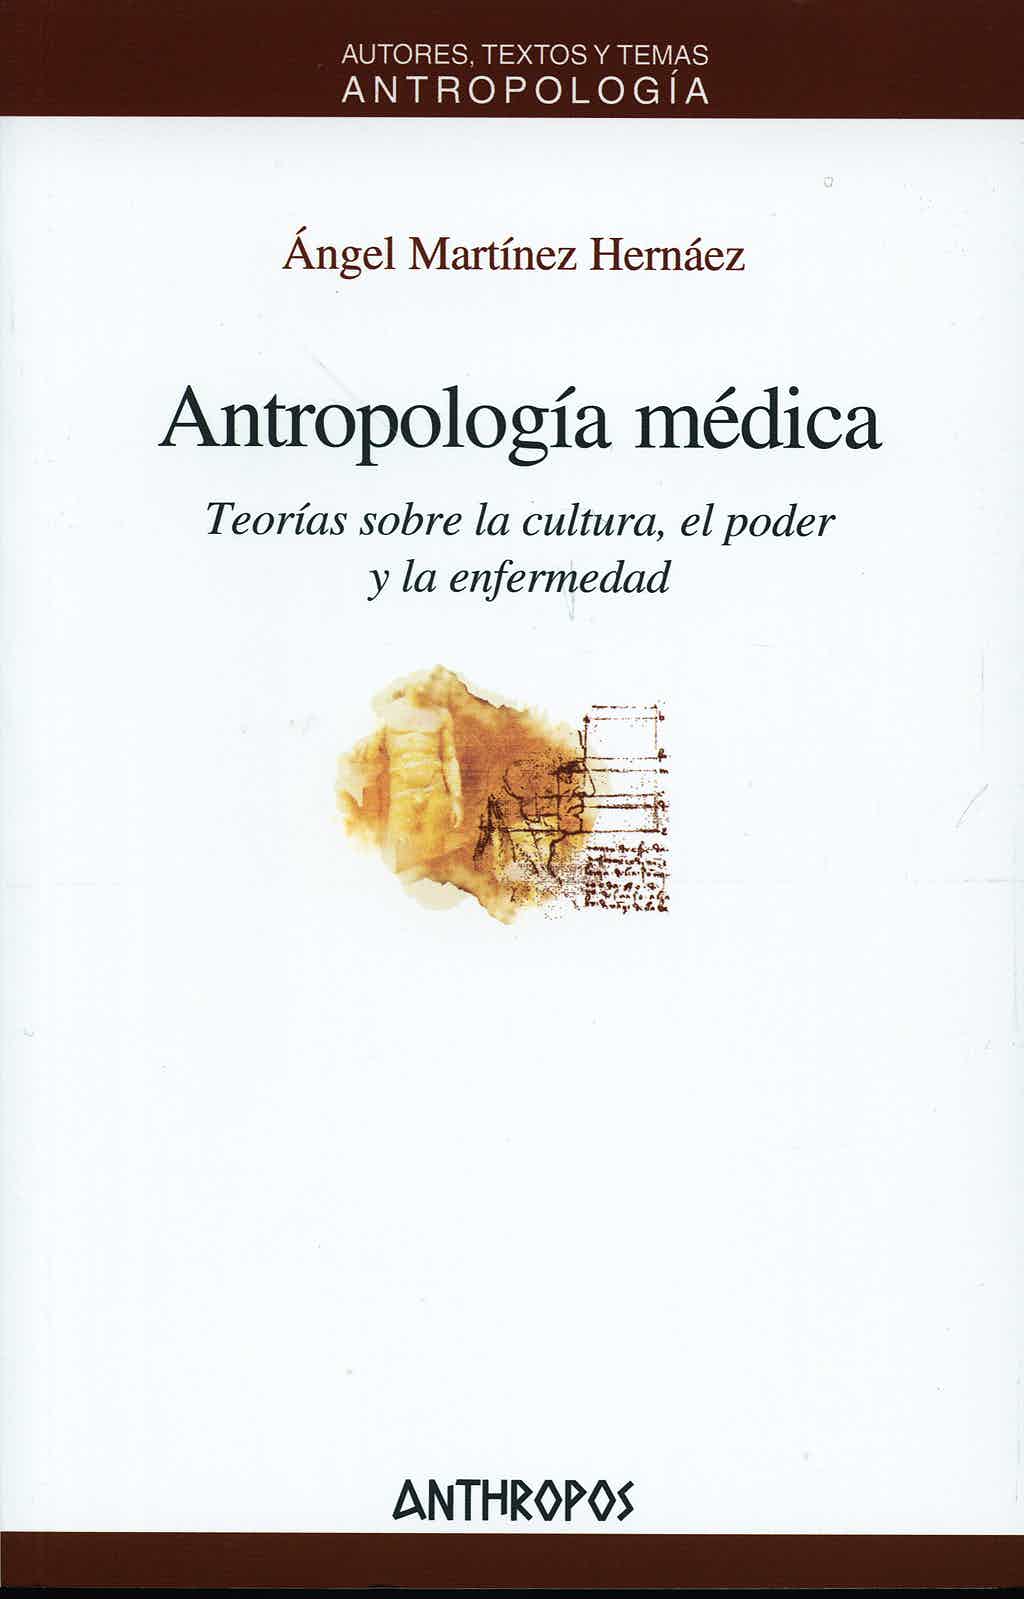 Imagen de portada del libro Antropología médica